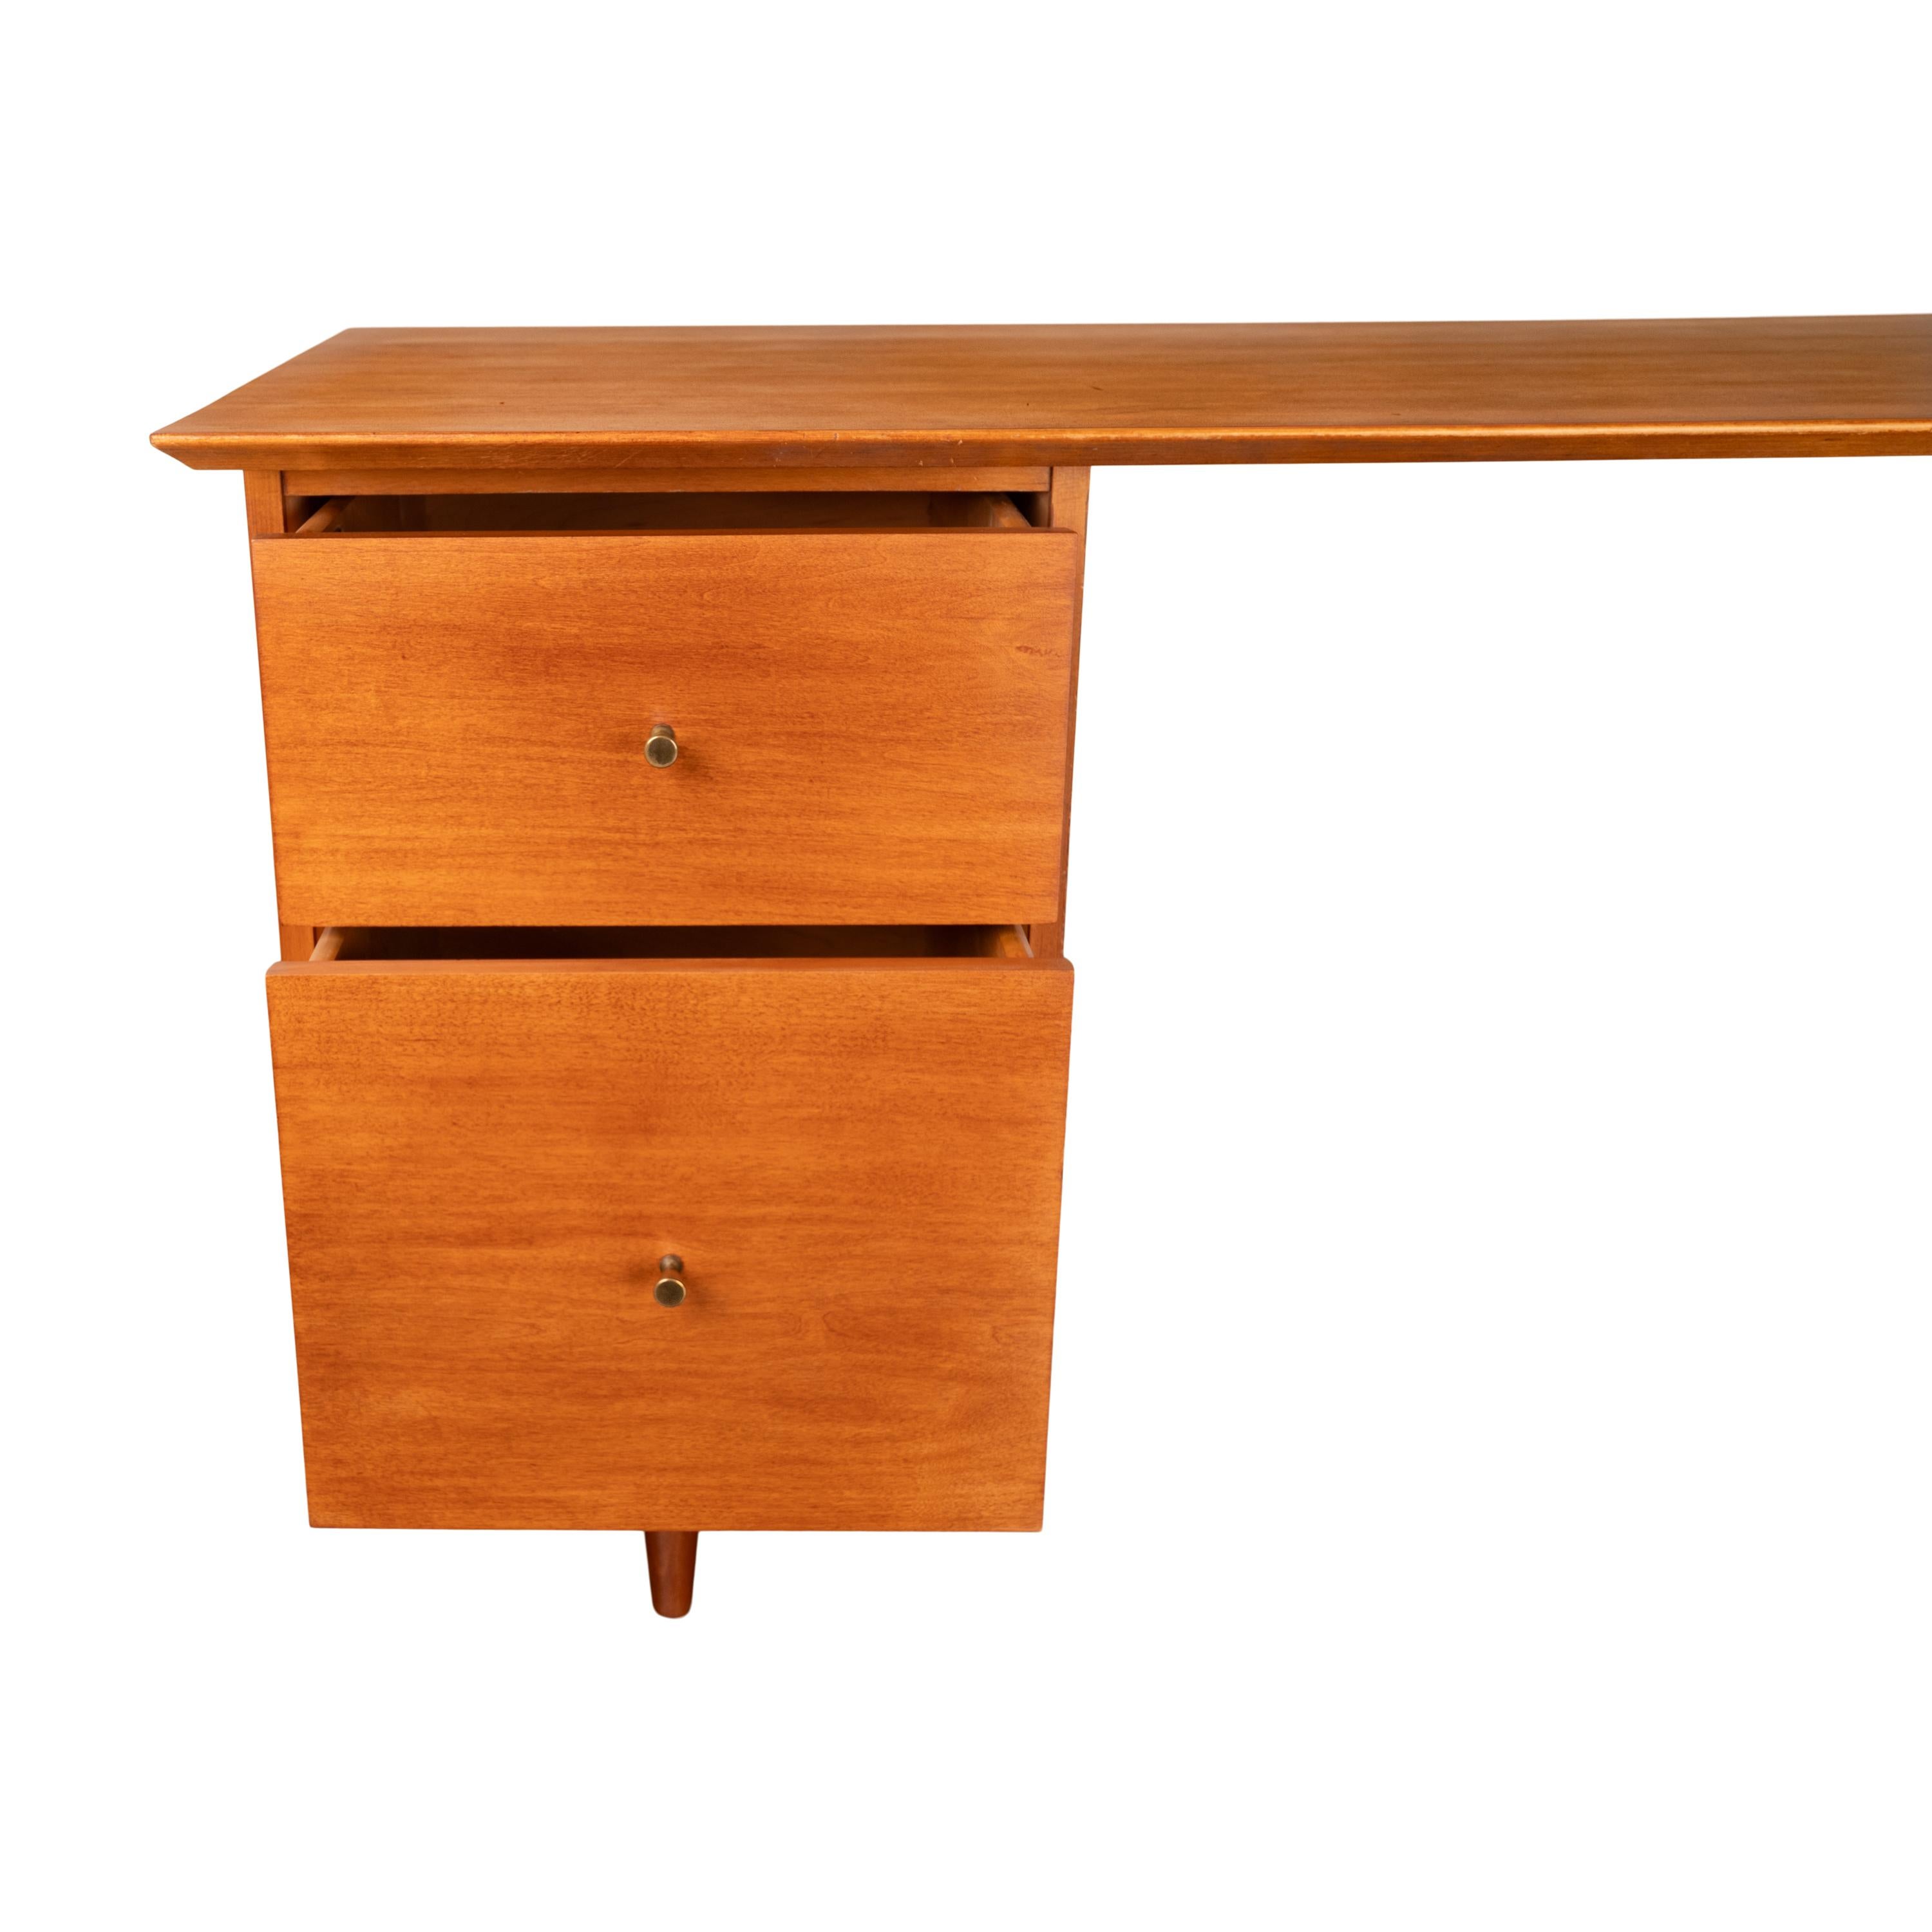 American Mid Century Modern Paul McCobb Planner Group Maple # 1560 Desk 1950's For Sale 11